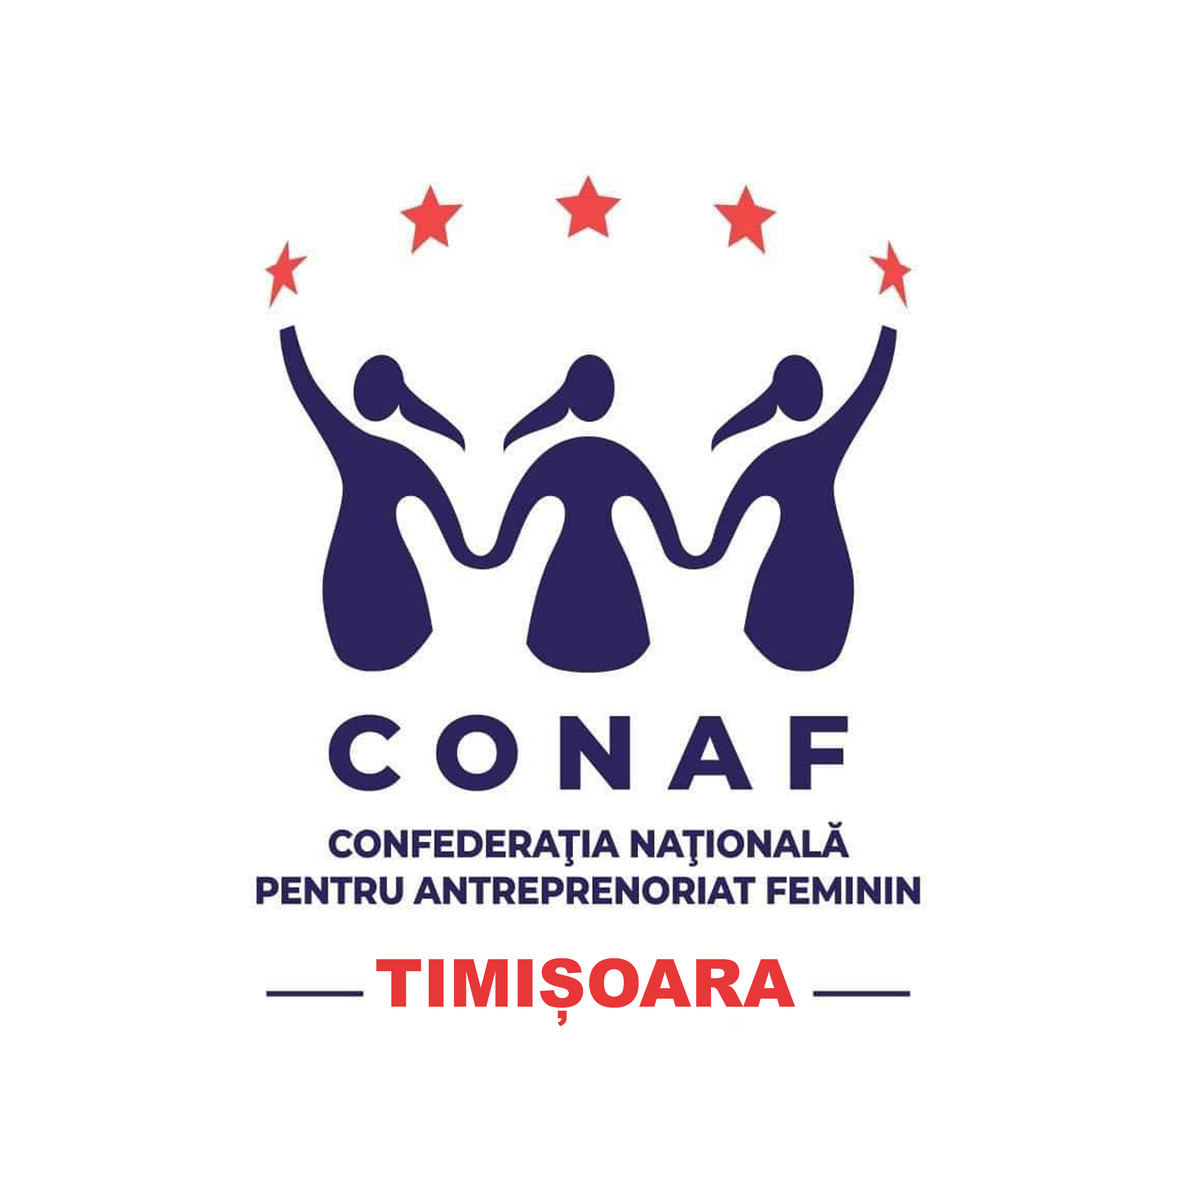 CONAF - Confederația Națională pentru Antreprenoriat Feminin